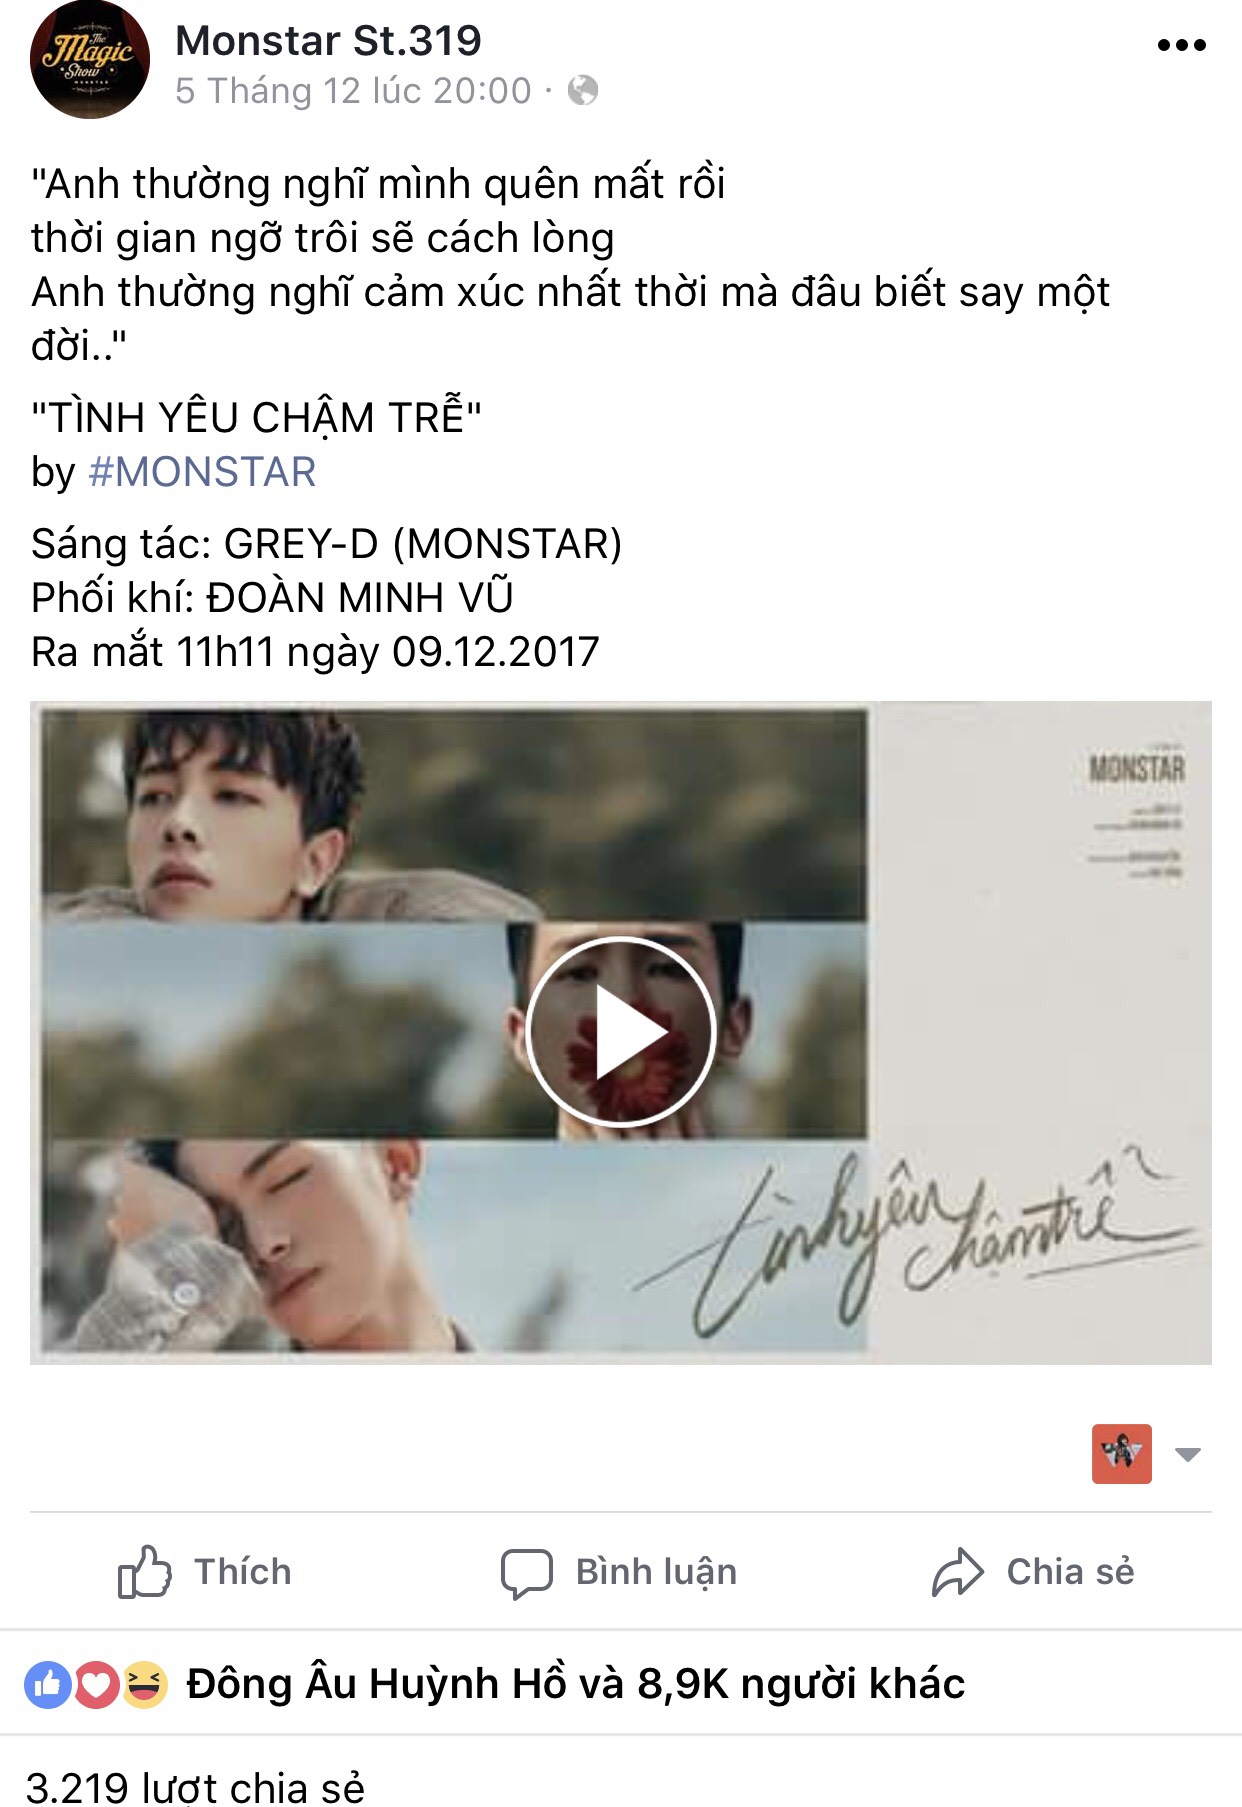 Chỉ sau 1 ngày, teaser ca khúc mới của MONSTAR nhận được hơn 3000 lượt share.